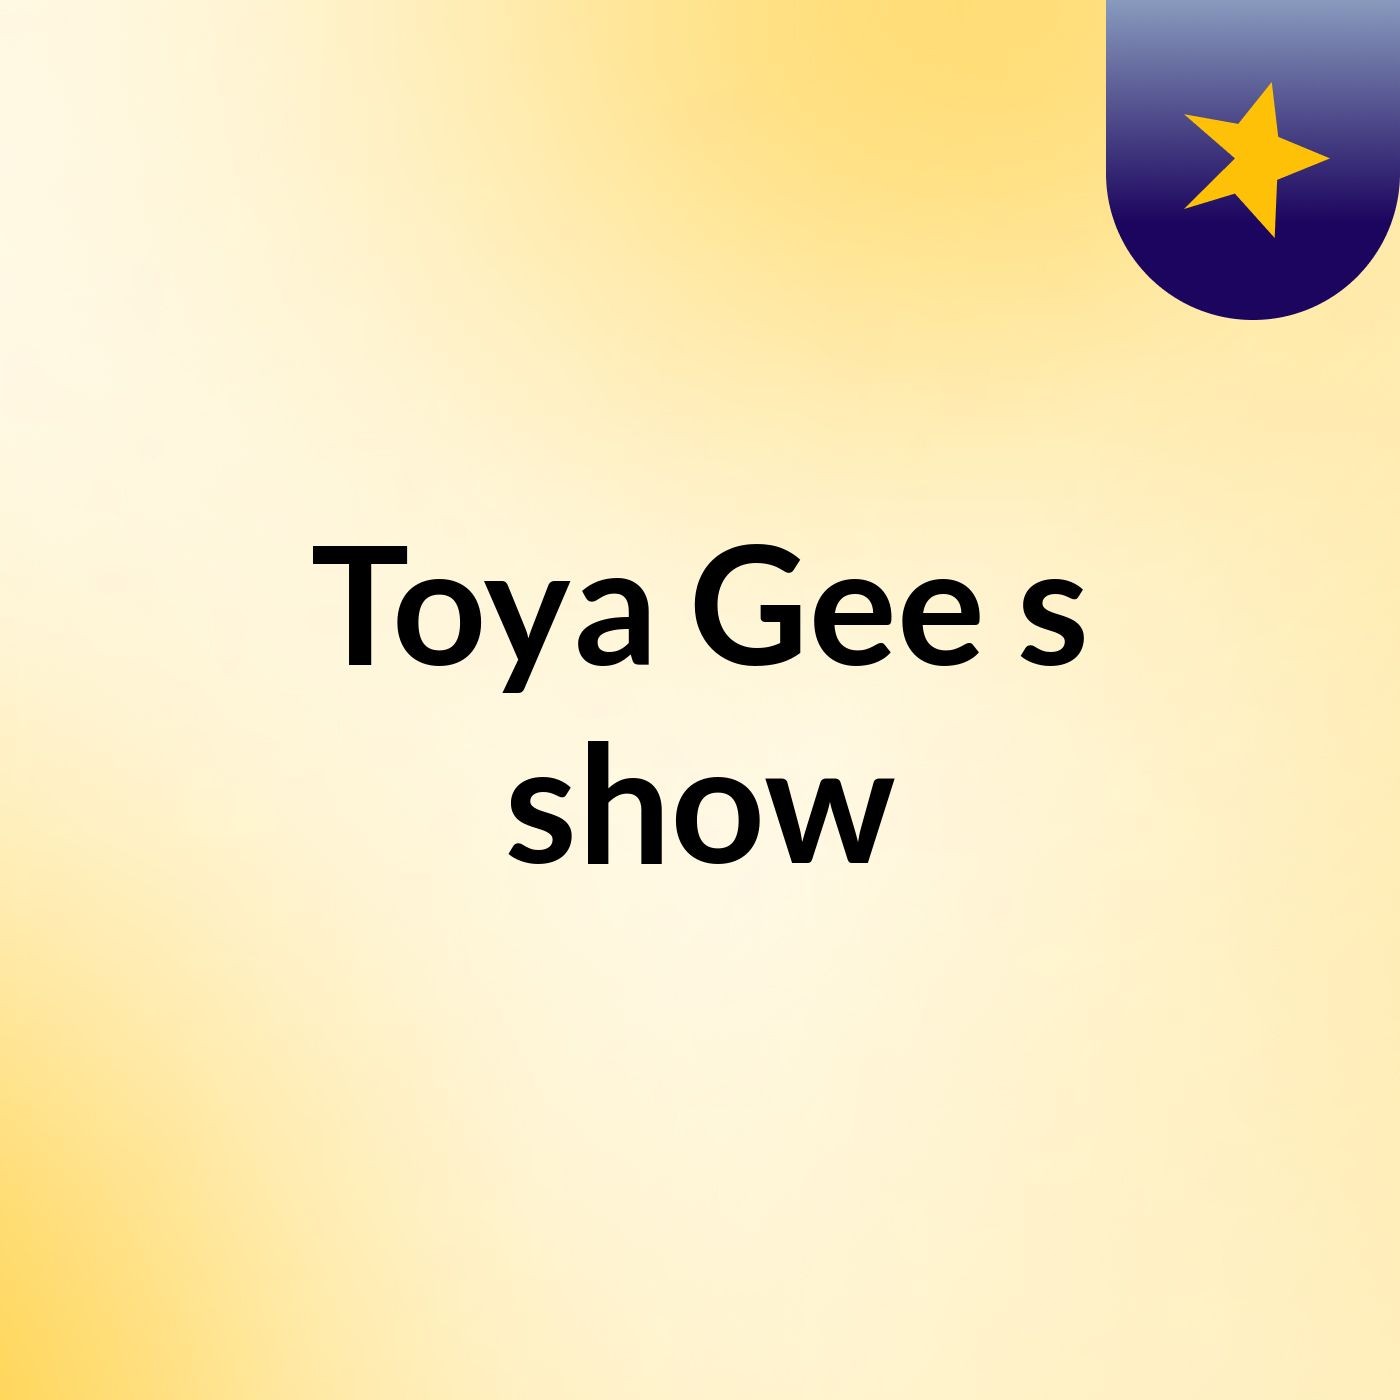 Toya Gee's show